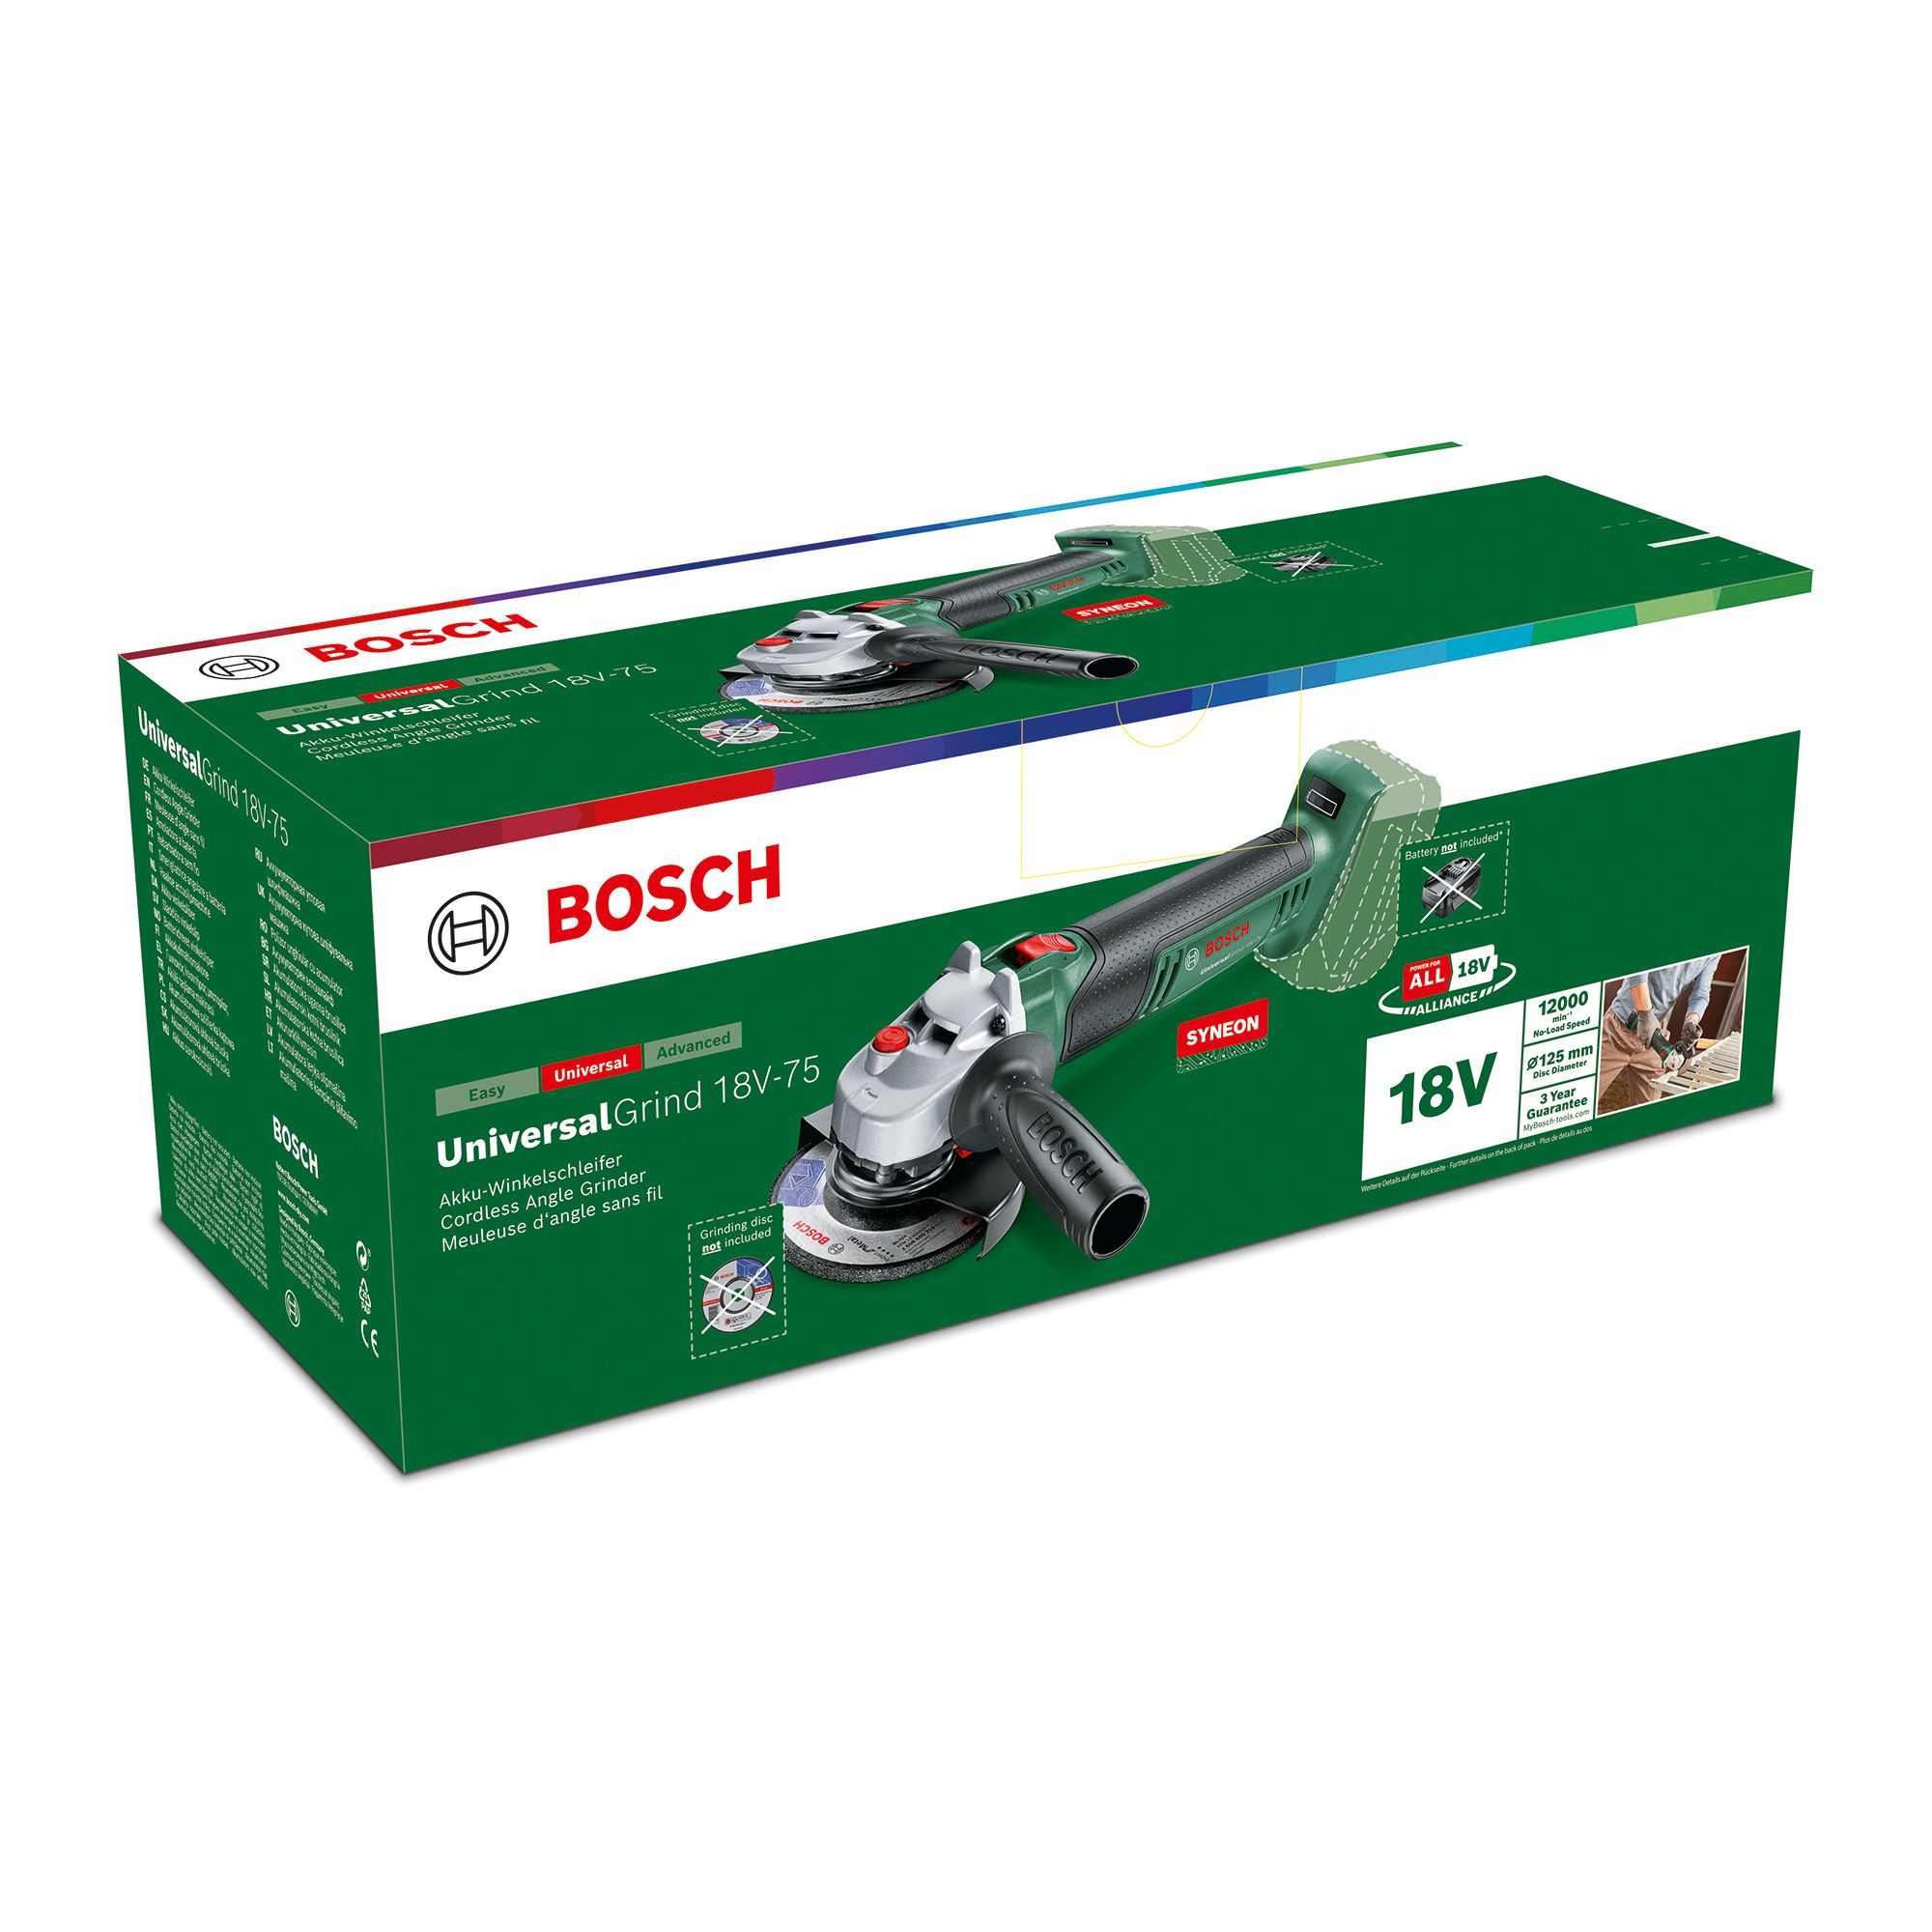 Bosch 18V Power for all 115mm Brushed Cordless Angle grinder (Bare Tool) - UniversalGrind 18V-75